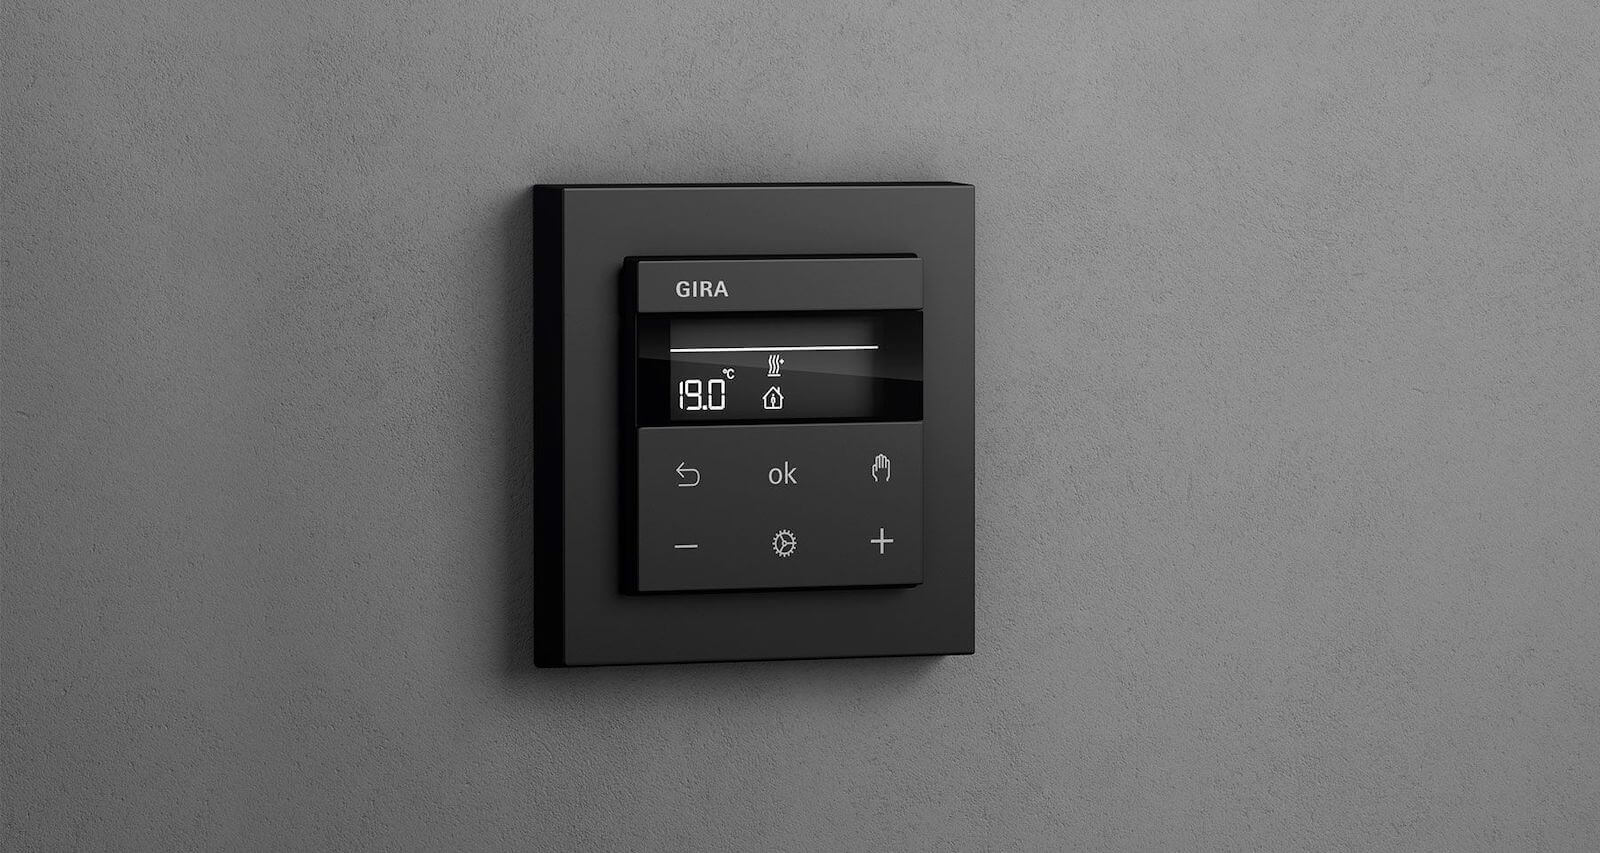 ترموستات اتاقی Gira کارآمد برای خانه هوشمند در زمستان